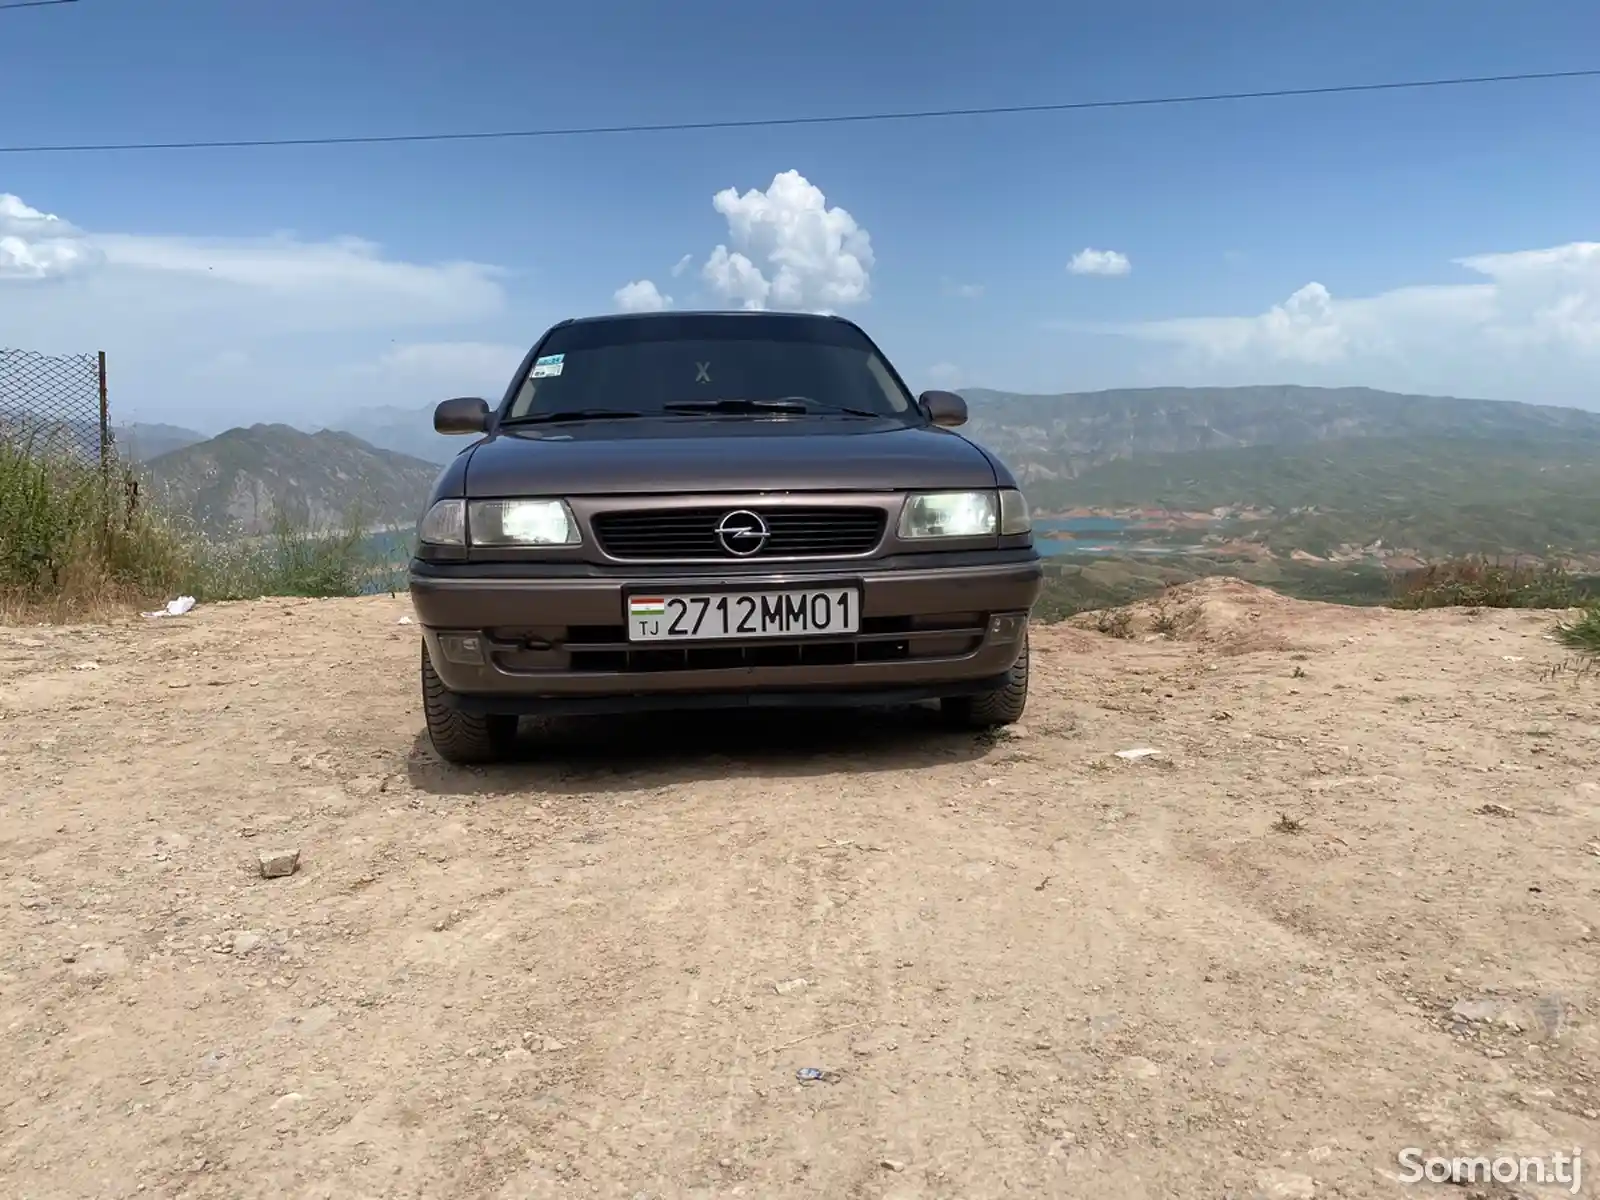 Opel Astra F, 1997-14